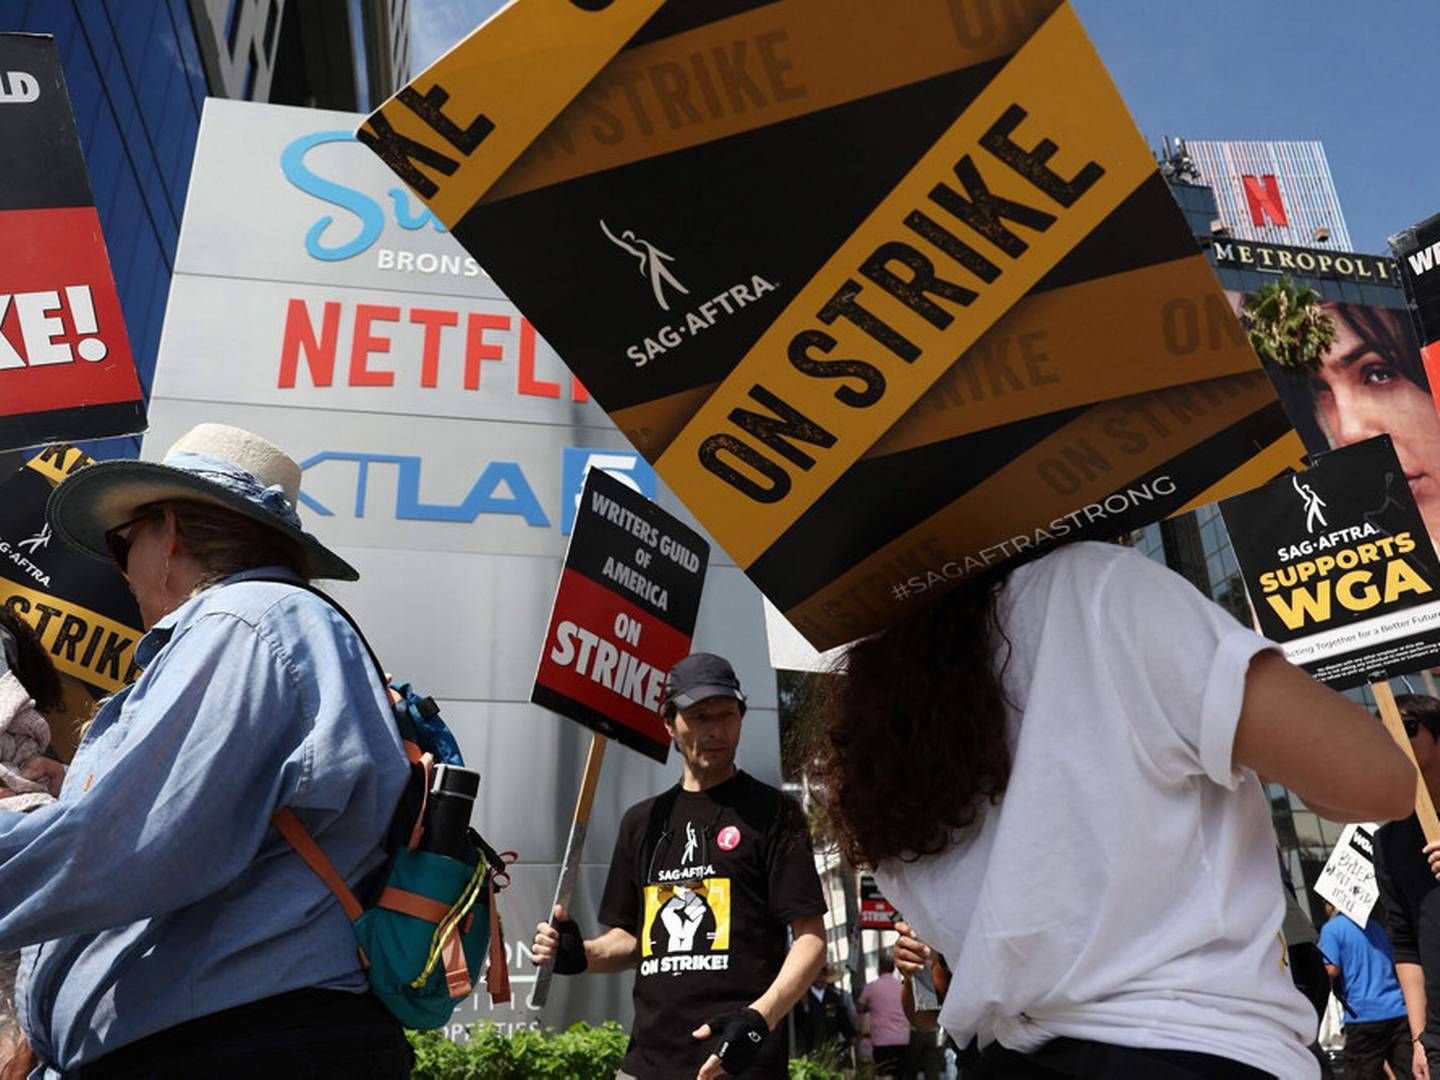 WGA's medlemmer har under den næsten fem måneder lange strejke markeret sig blandt andet uden for Netflix' kontor. | Foto: Mario Tama/Ritzau Scanpix